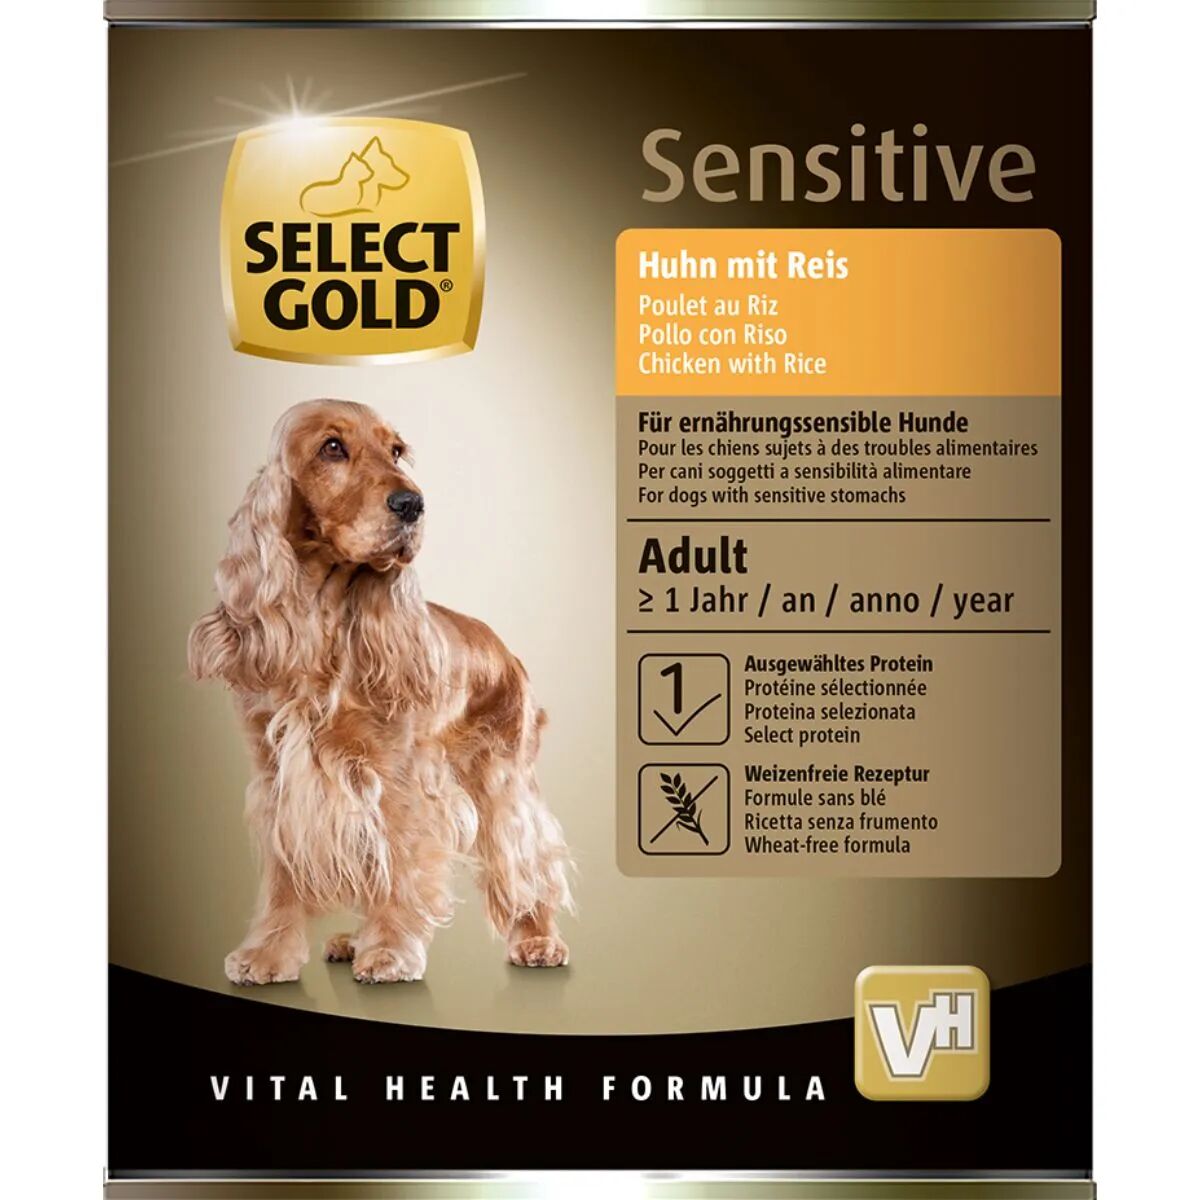 SELECT GOLD Sensitive Dog Lattina 800G POLLO CON RISO